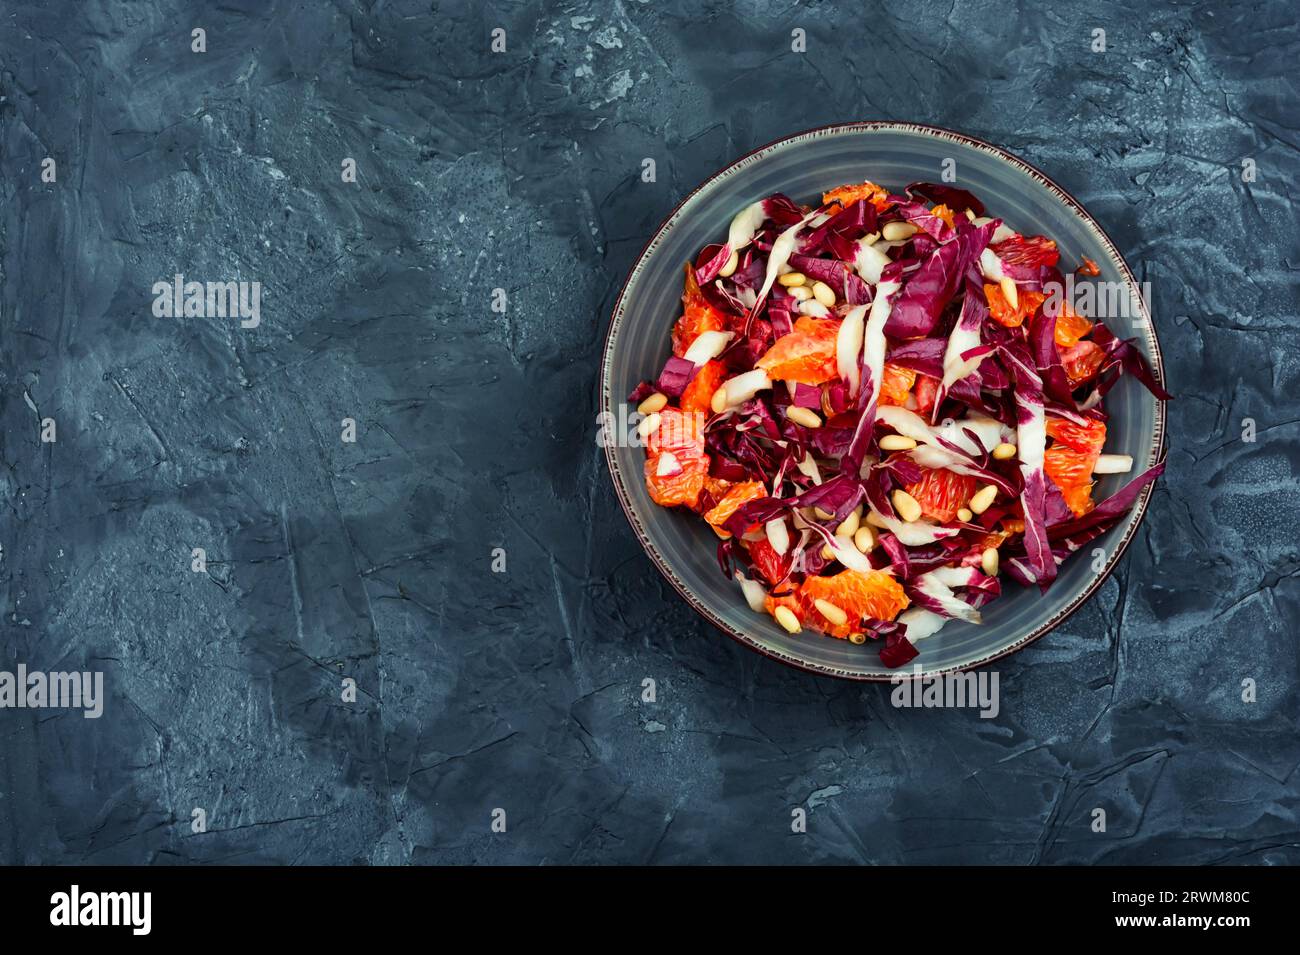 Salade de chicorée rouge fraîche avec orange sur une assiette. Repas végétarien. Copier l'espace Banque D'Images